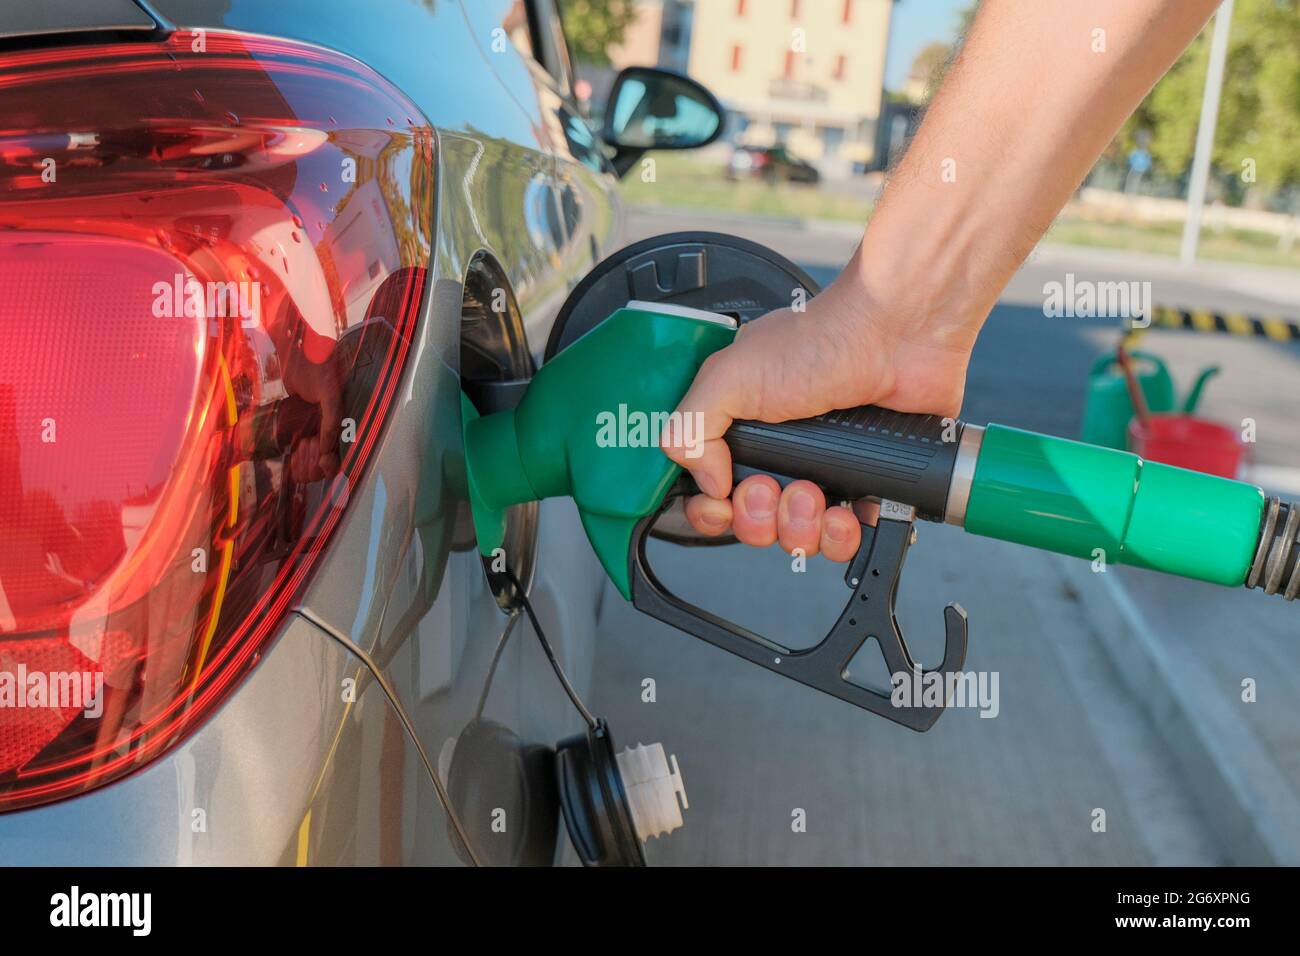 Le mani dell'uomo tengono la pompa di benzina e riempiono l'auto di carburante da vicino attraverso le strade della città. Industria energetica. Stazione di benzina business / mercato. Foto Stock